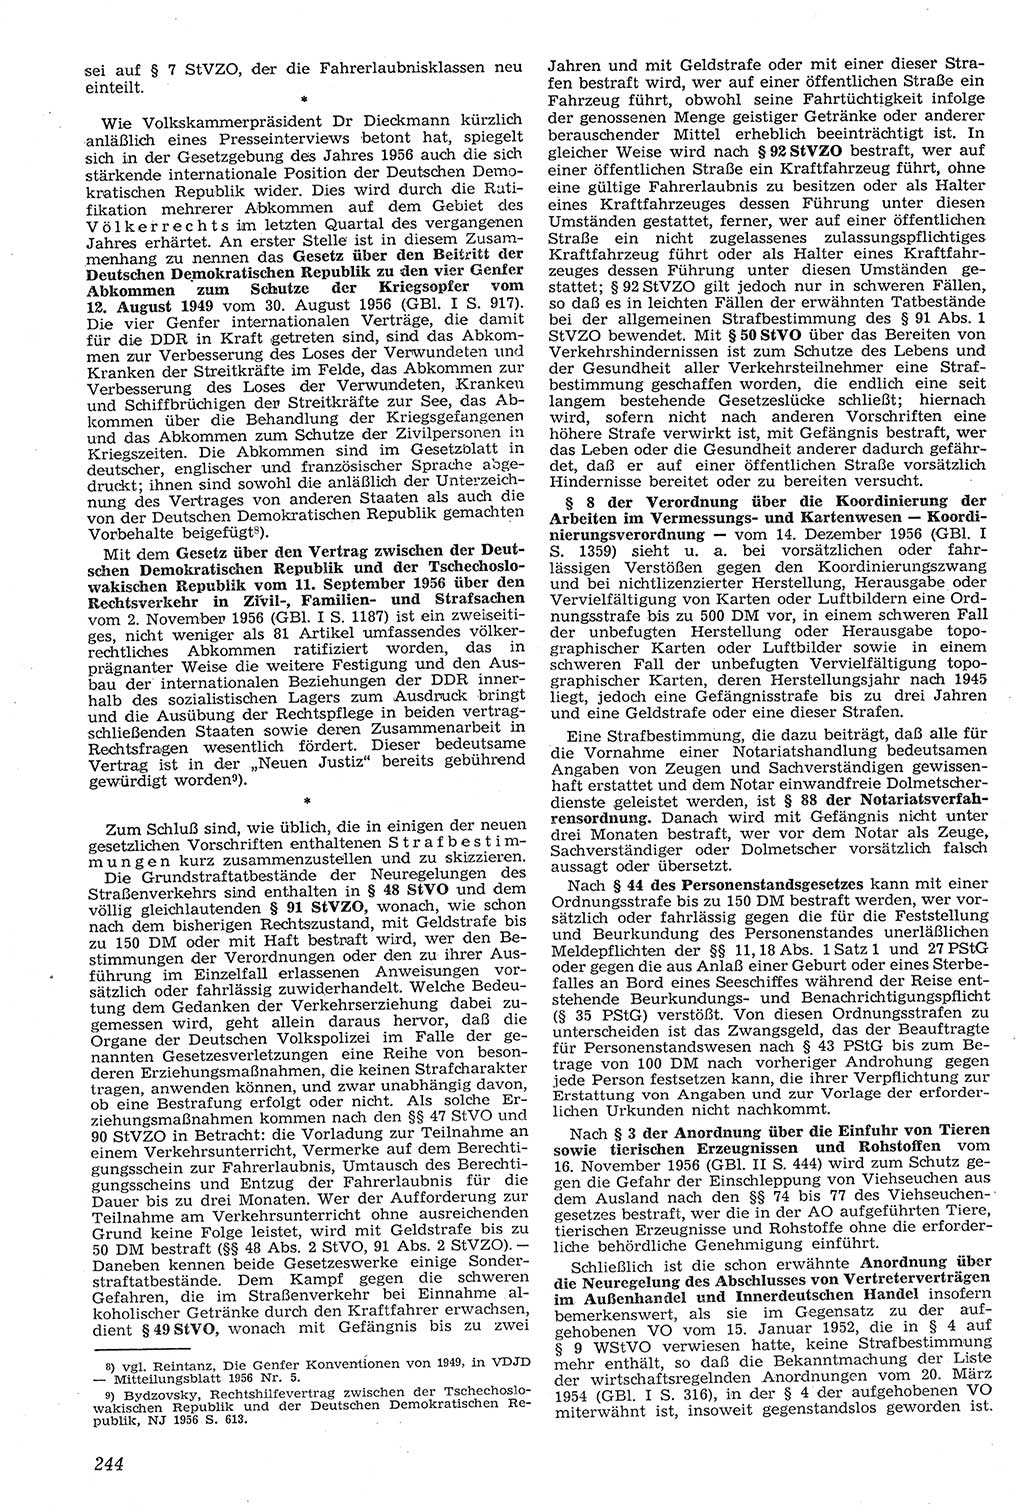 Neue Justiz (NJ), Zeitschrift für Recht und Rechtswissenschaft [Deutsche Demokratische Republik (DDR)], 11. Jahrgang 1957, Seite 244 (NJ DDR 1957, S. 244)